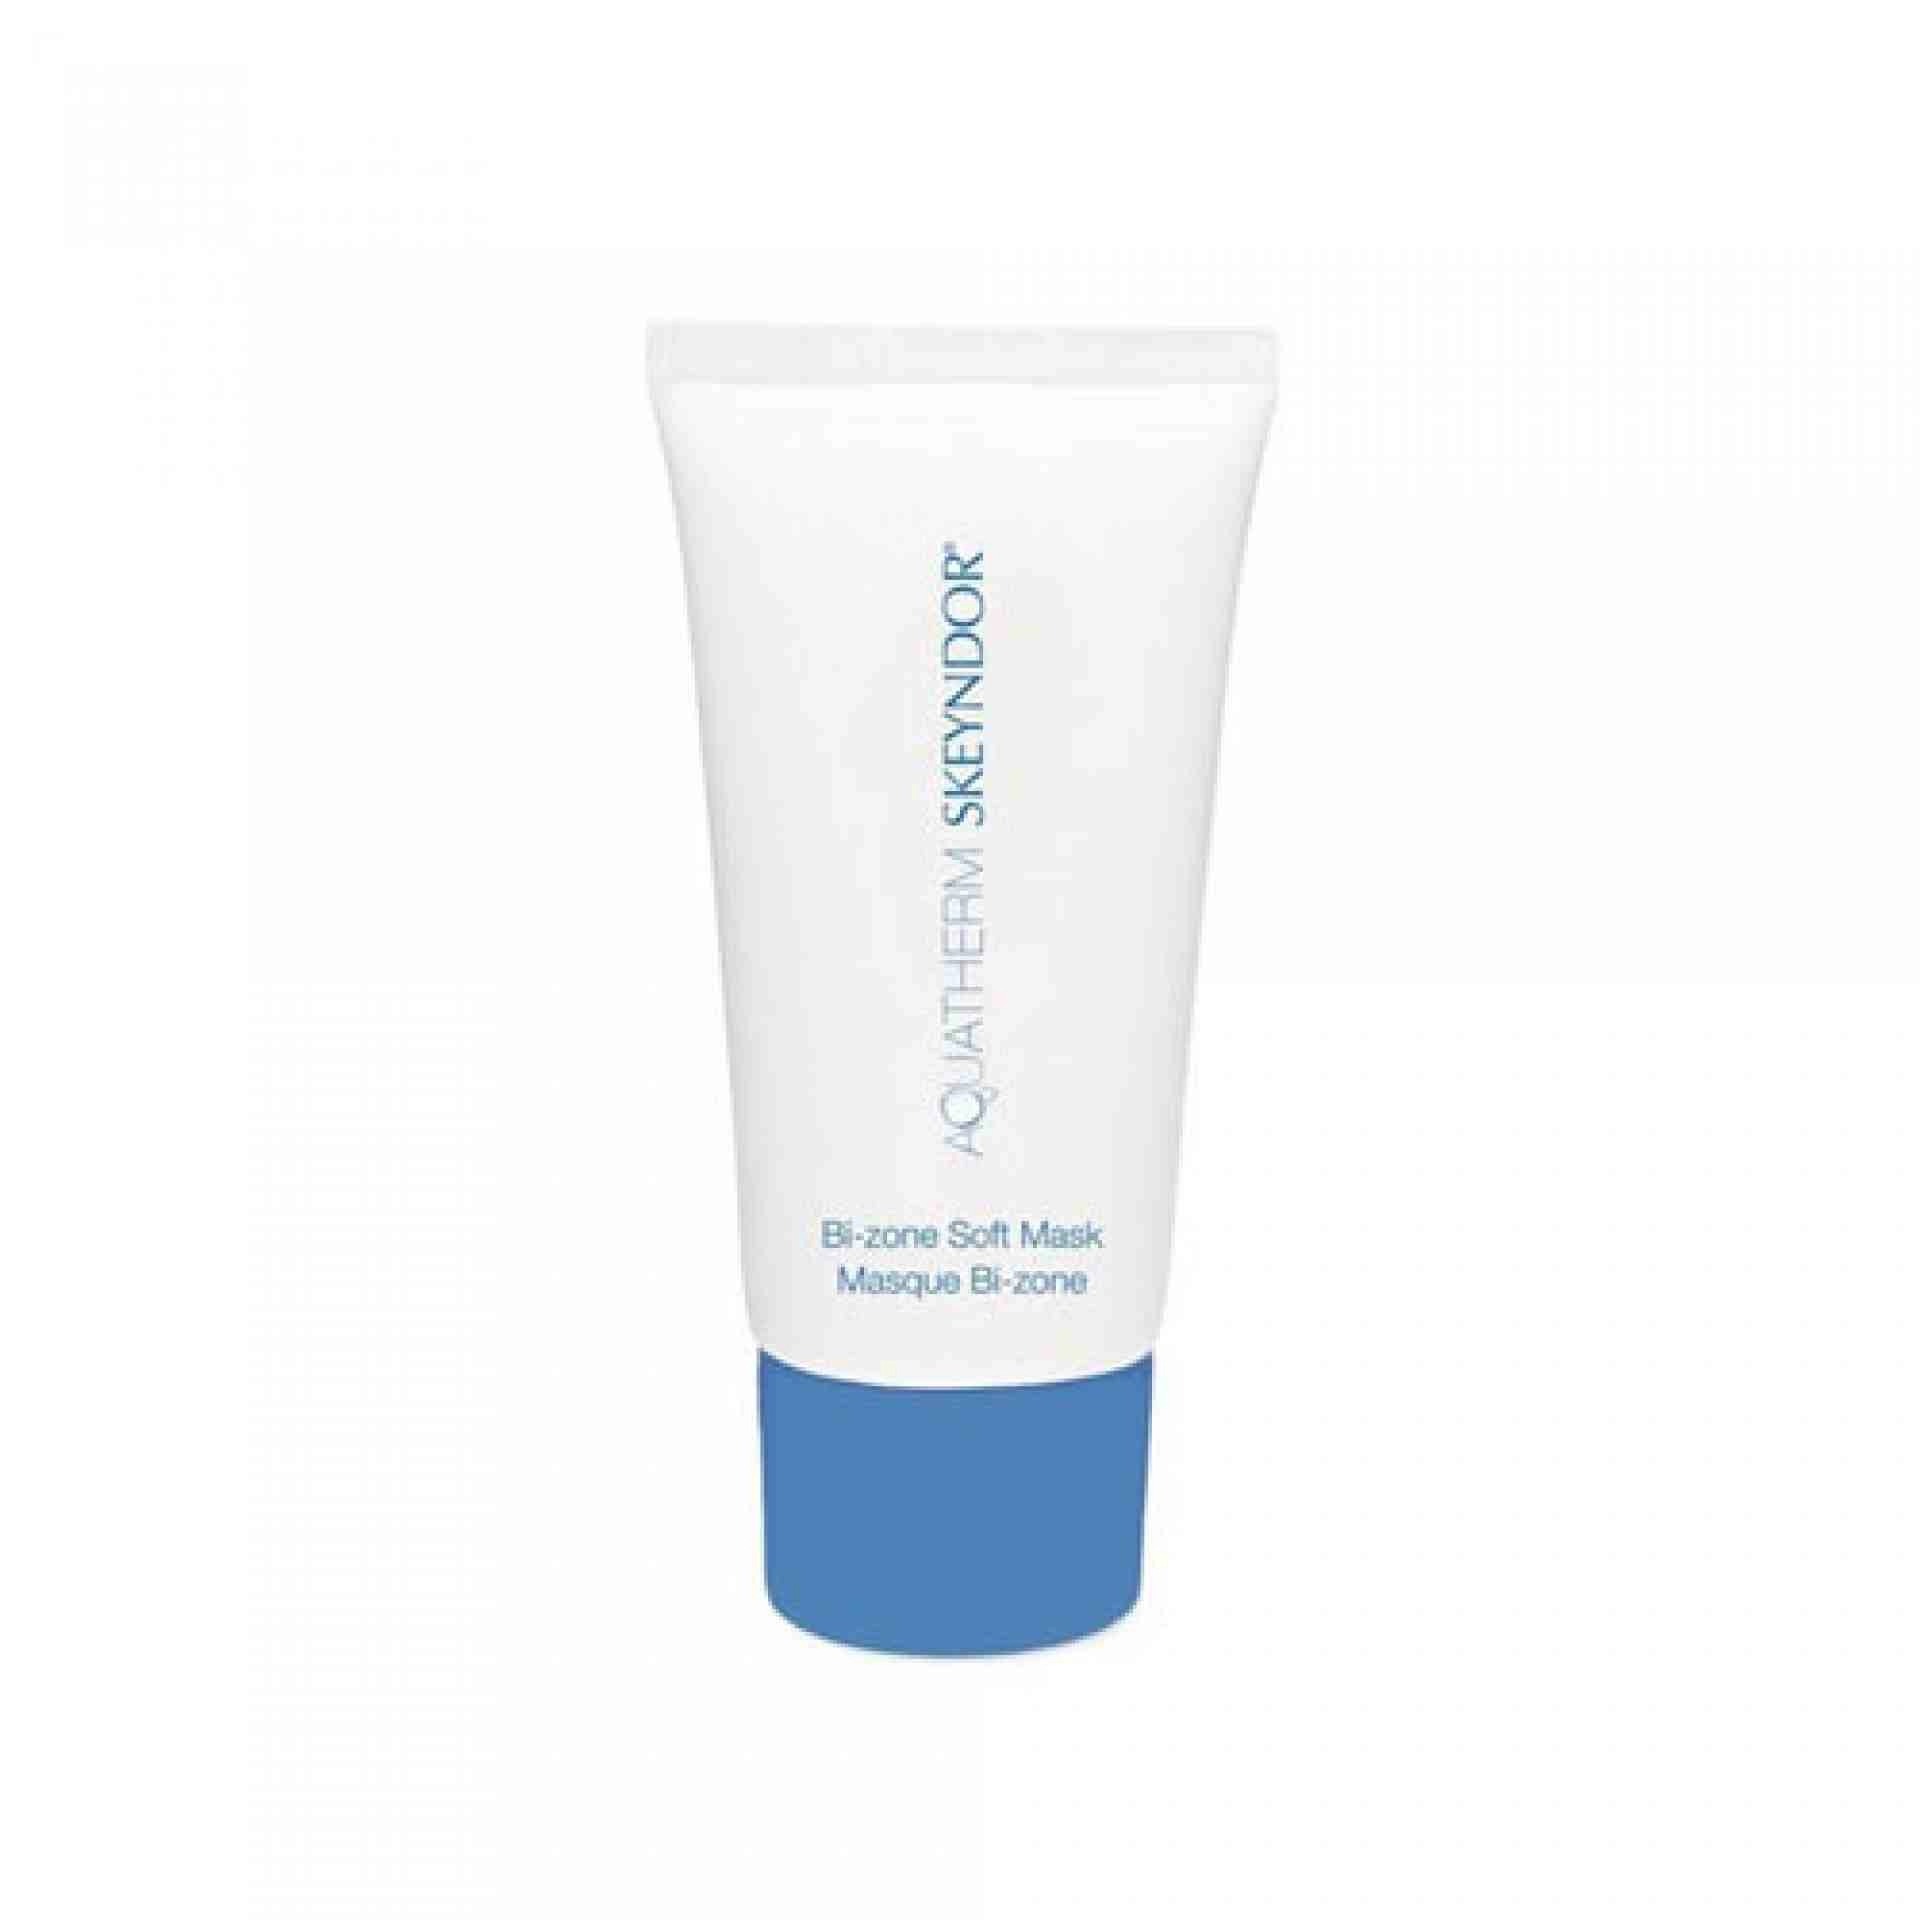 Bizone Soft Mask | Mascarilla Gel Calmante 50ml - Aquatherm - Skeyndor ®